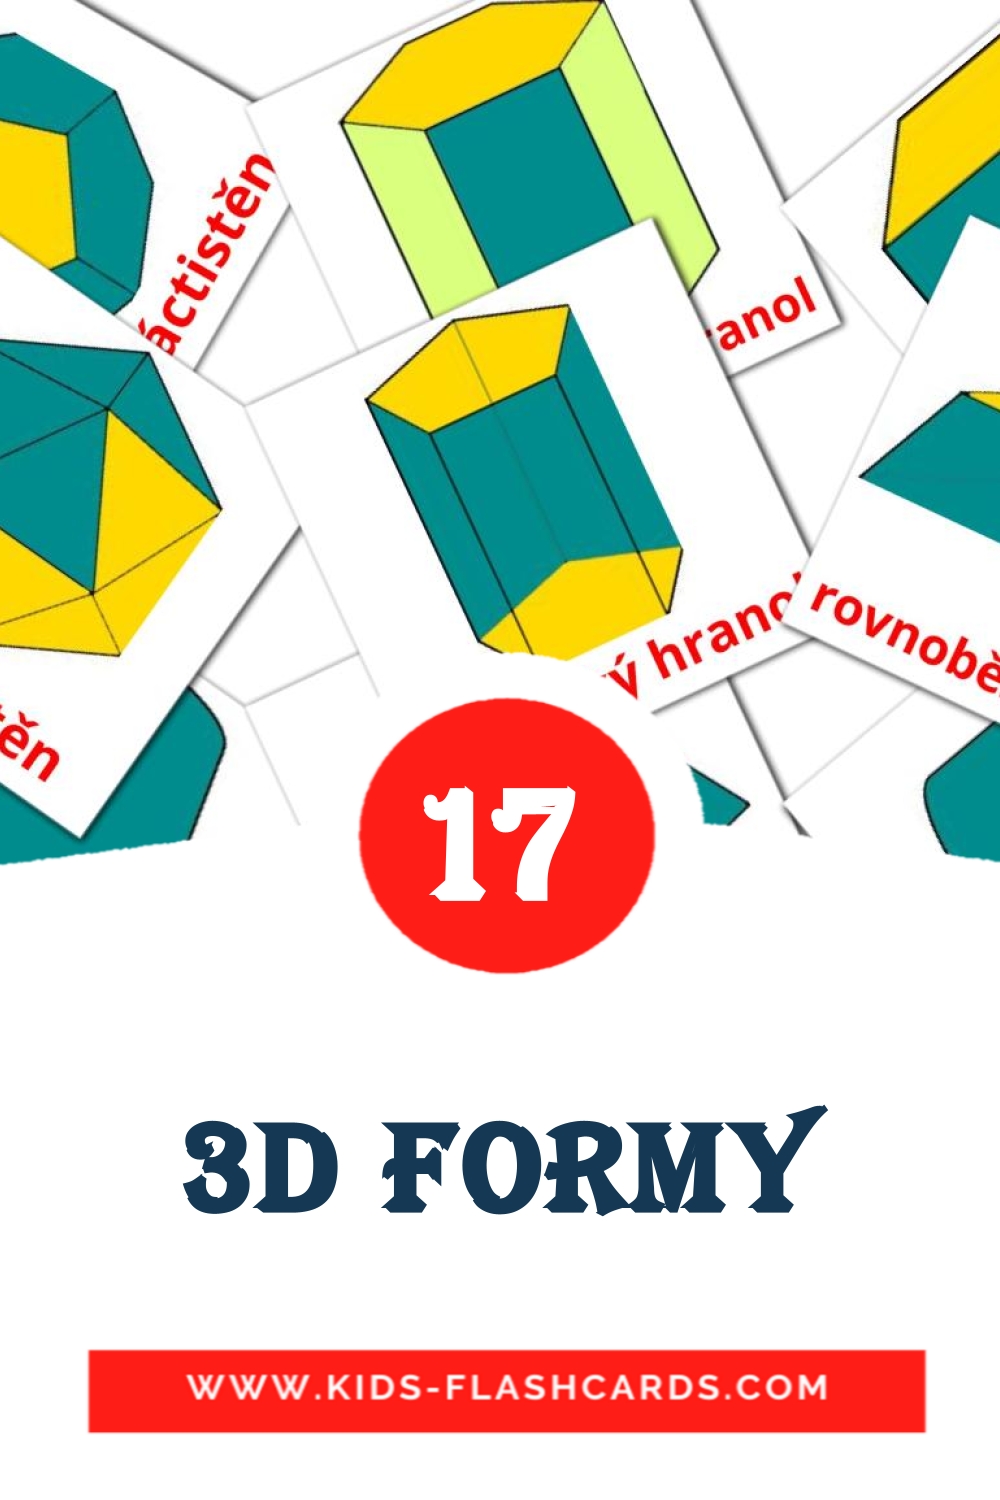 17 tarjetas didacticas de 3D formy para el jardín de infancia en checo